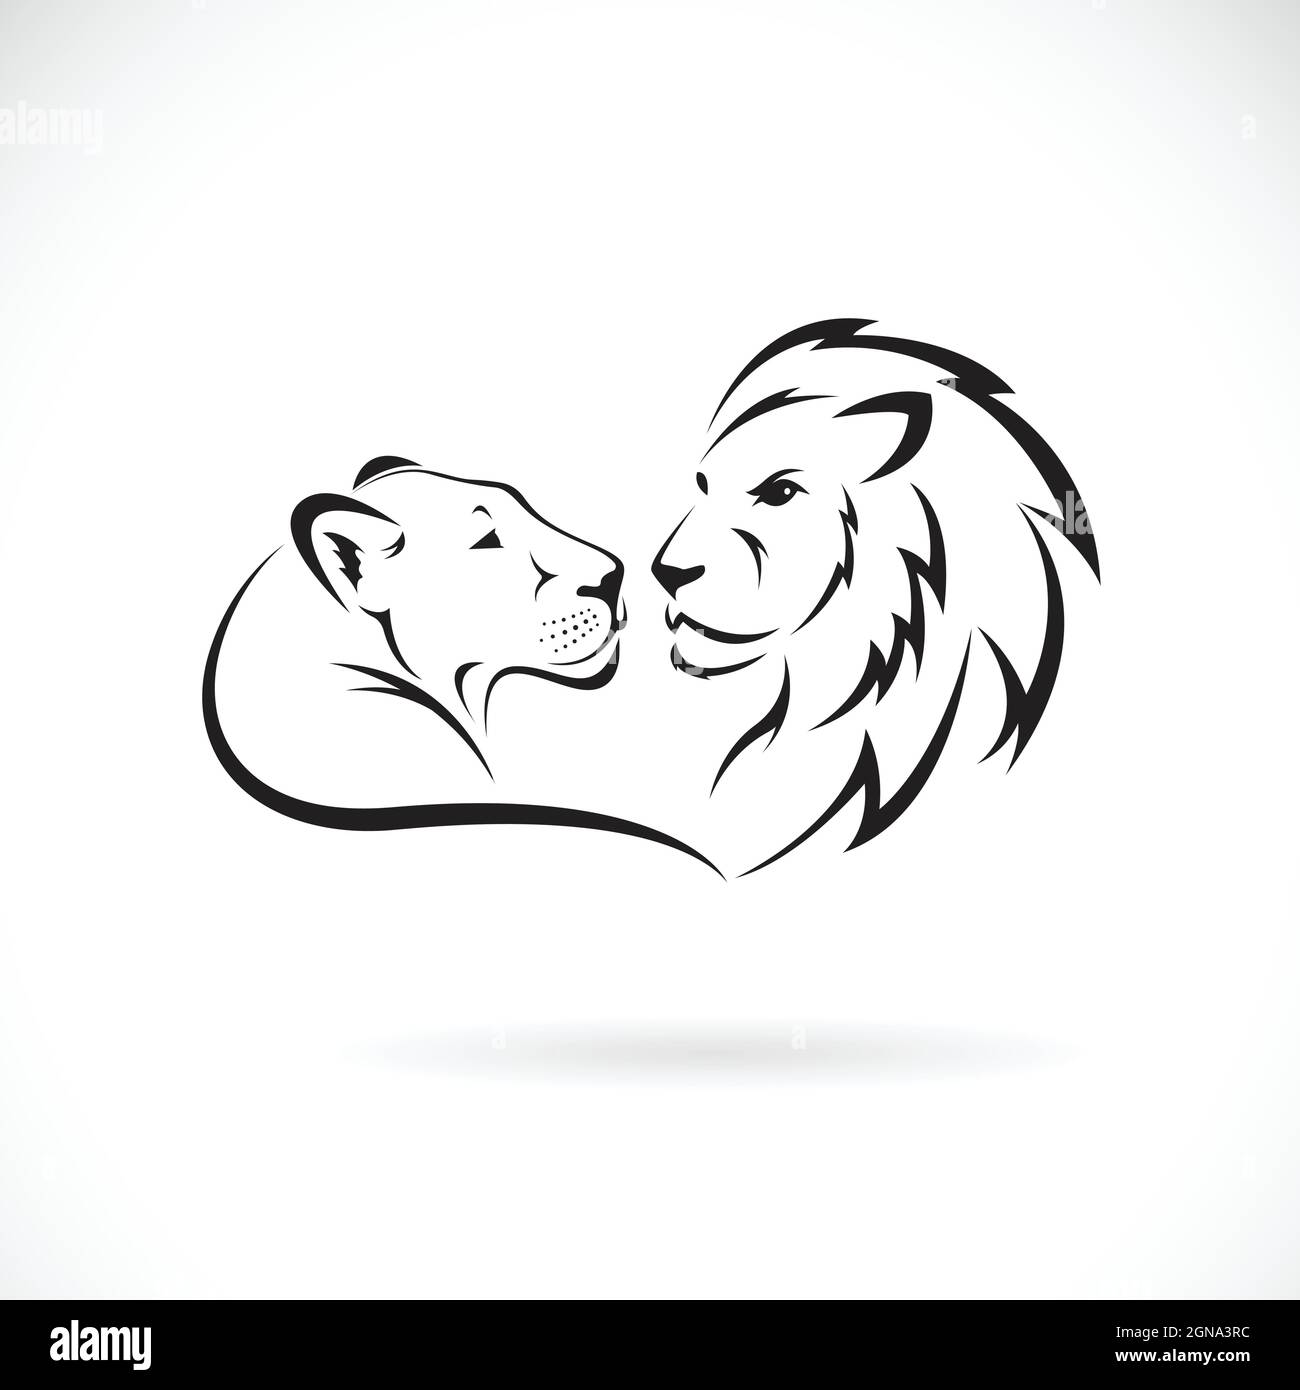 Männliches Löwen- und weibliches Löwen-Design auf weißem Hintergrund. Wilde Tiere. Lion-Logo oder -Symbol. Leicht editierbare Vektorgrafik mit Ebenen. Stock Vektor